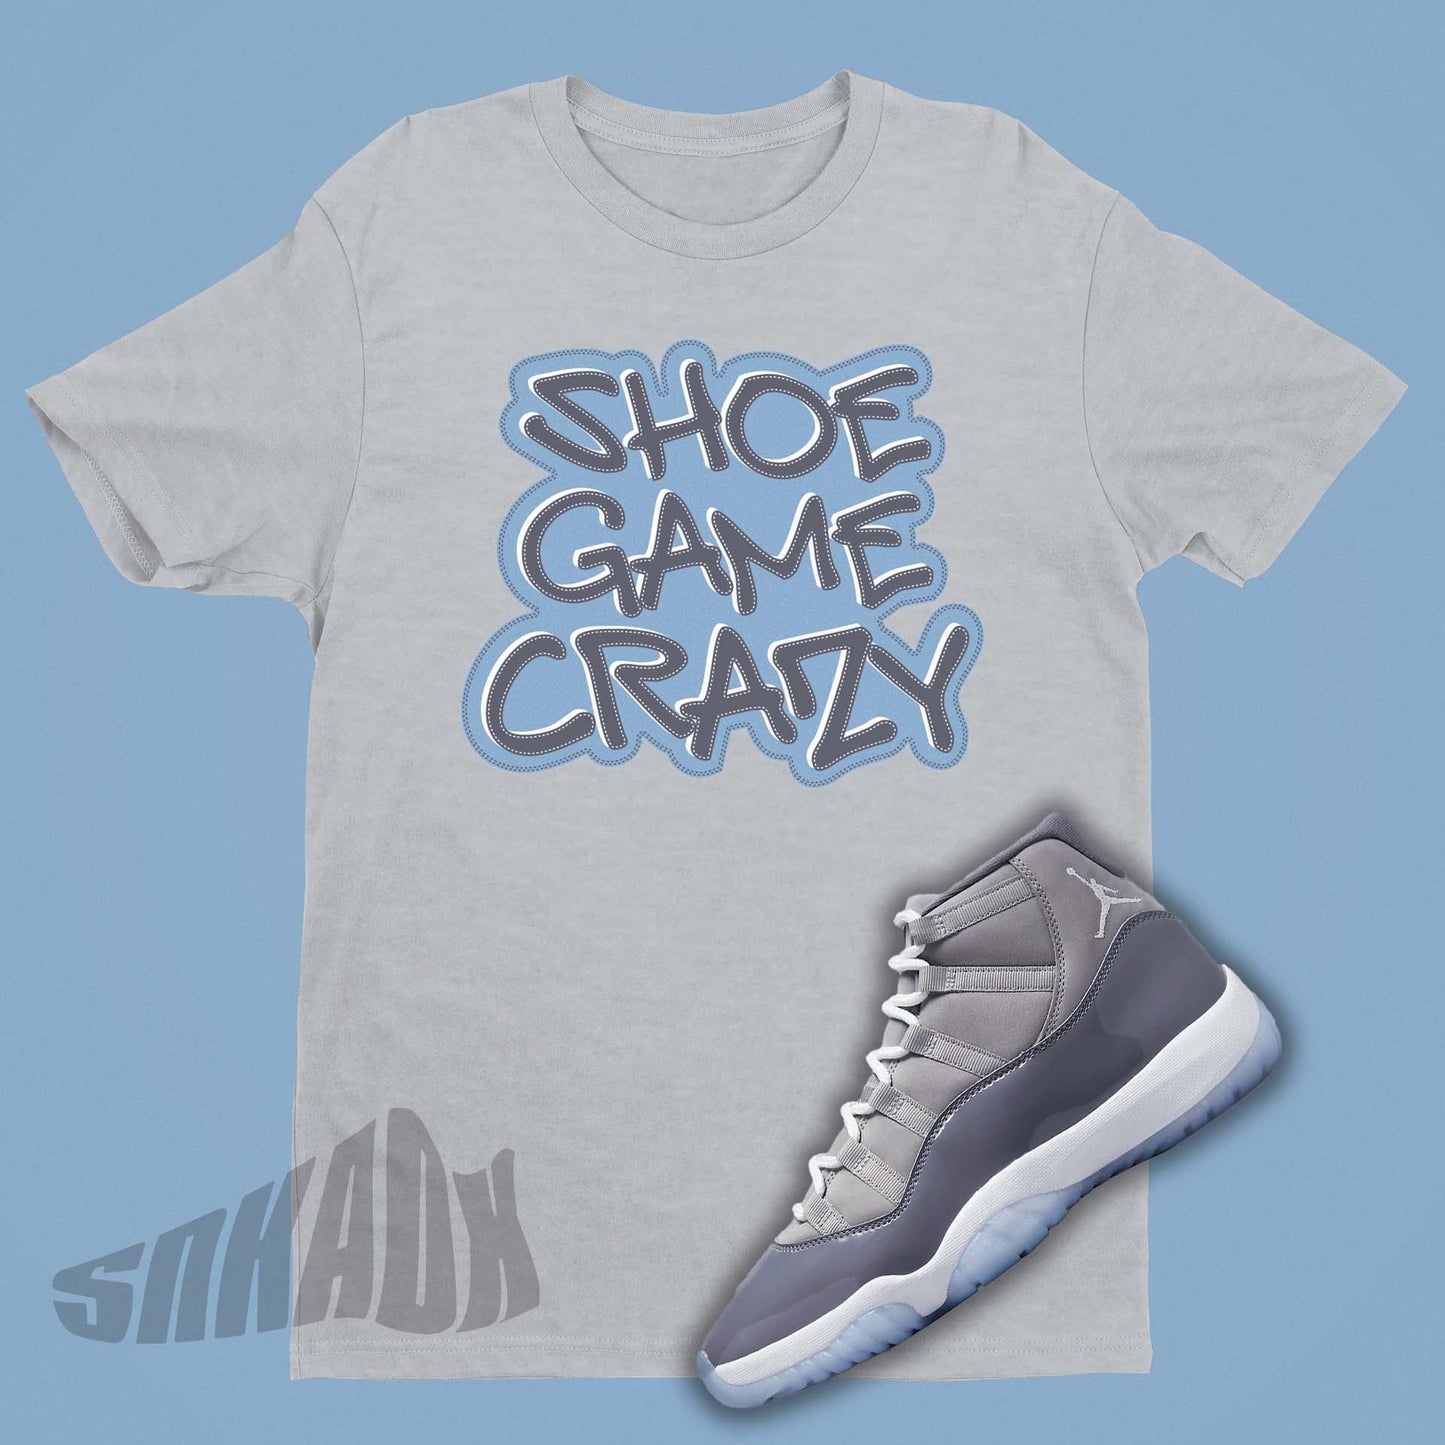 Shoe Game Crazy Shirt to match Air Jordan 11 Cool Grey